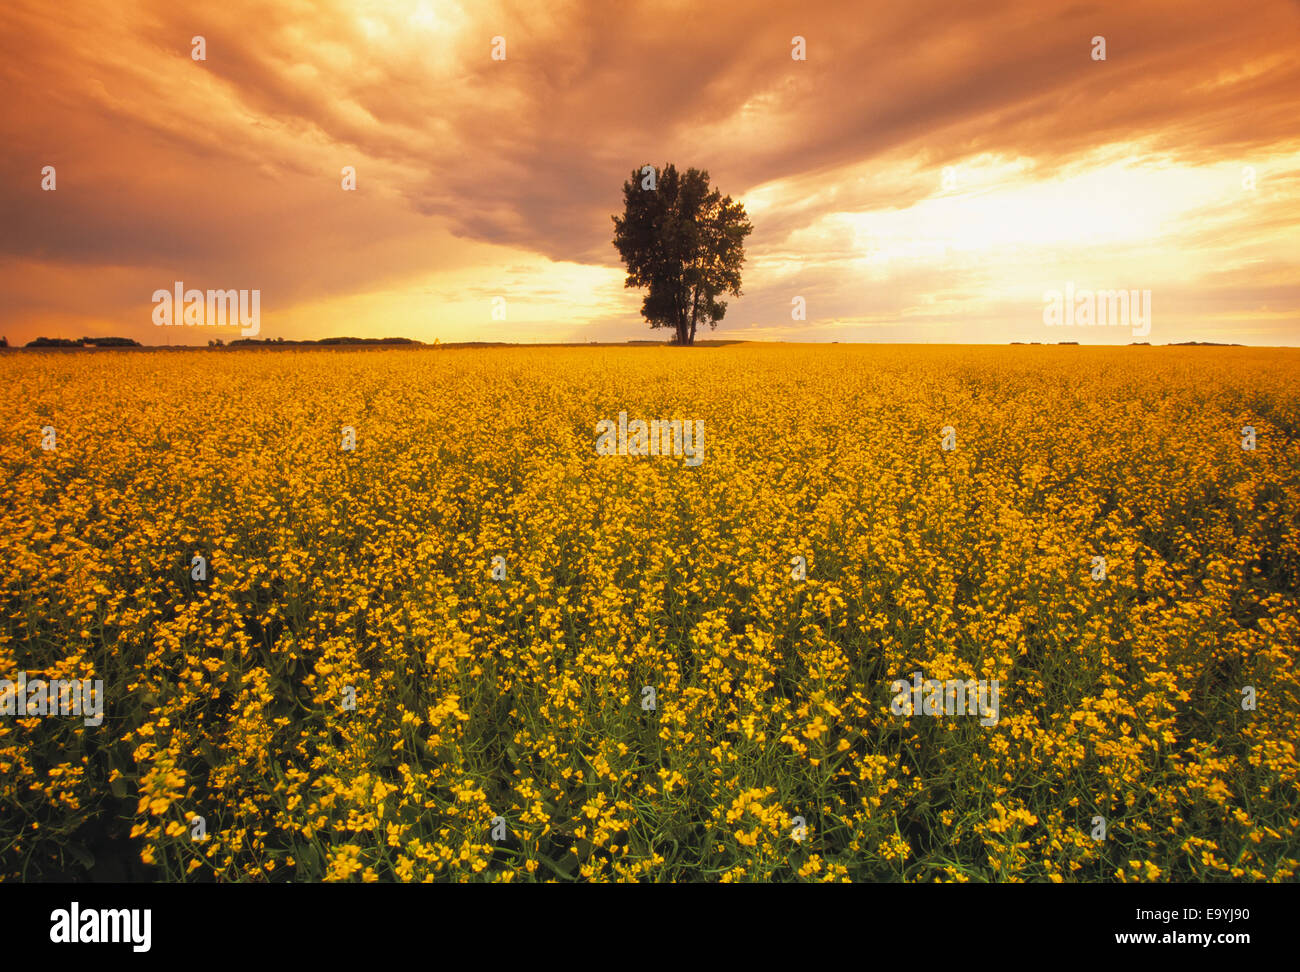 Landwirtschaft - ein Bereich der Mitte Wachstum Raps in voller Blüte bei Sonnenuntergang mit einem einsamen Baum in der Ferne / Carey, Manitoba, Kanada. Stockfoto